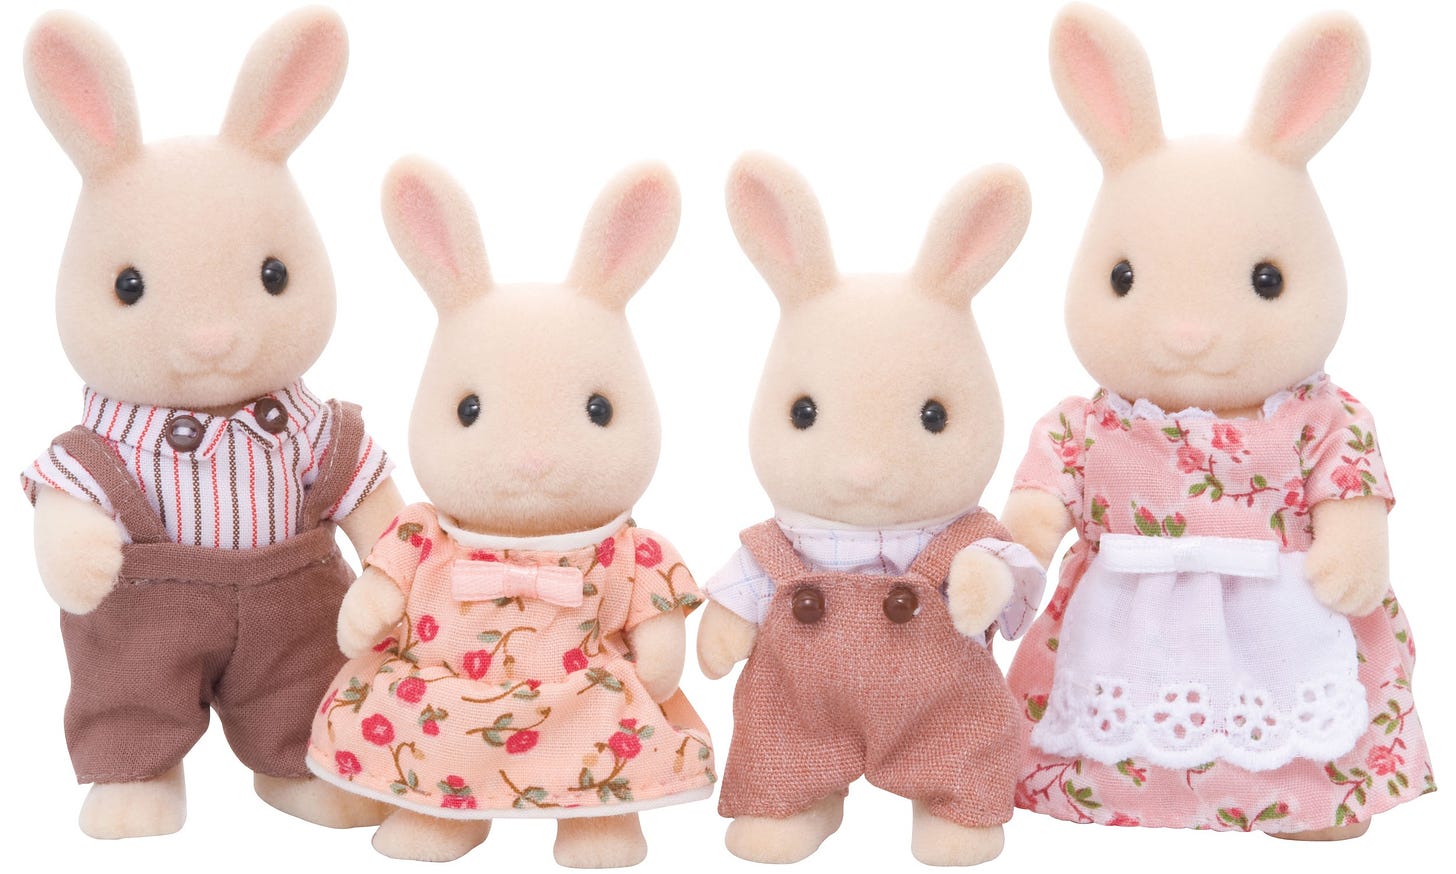 Sylvanian Families 4108 Milk Rabbit Family Figure 0.1 cm*0.1 cm*0.1 cm :  Amazon.com.au: Toys & Games